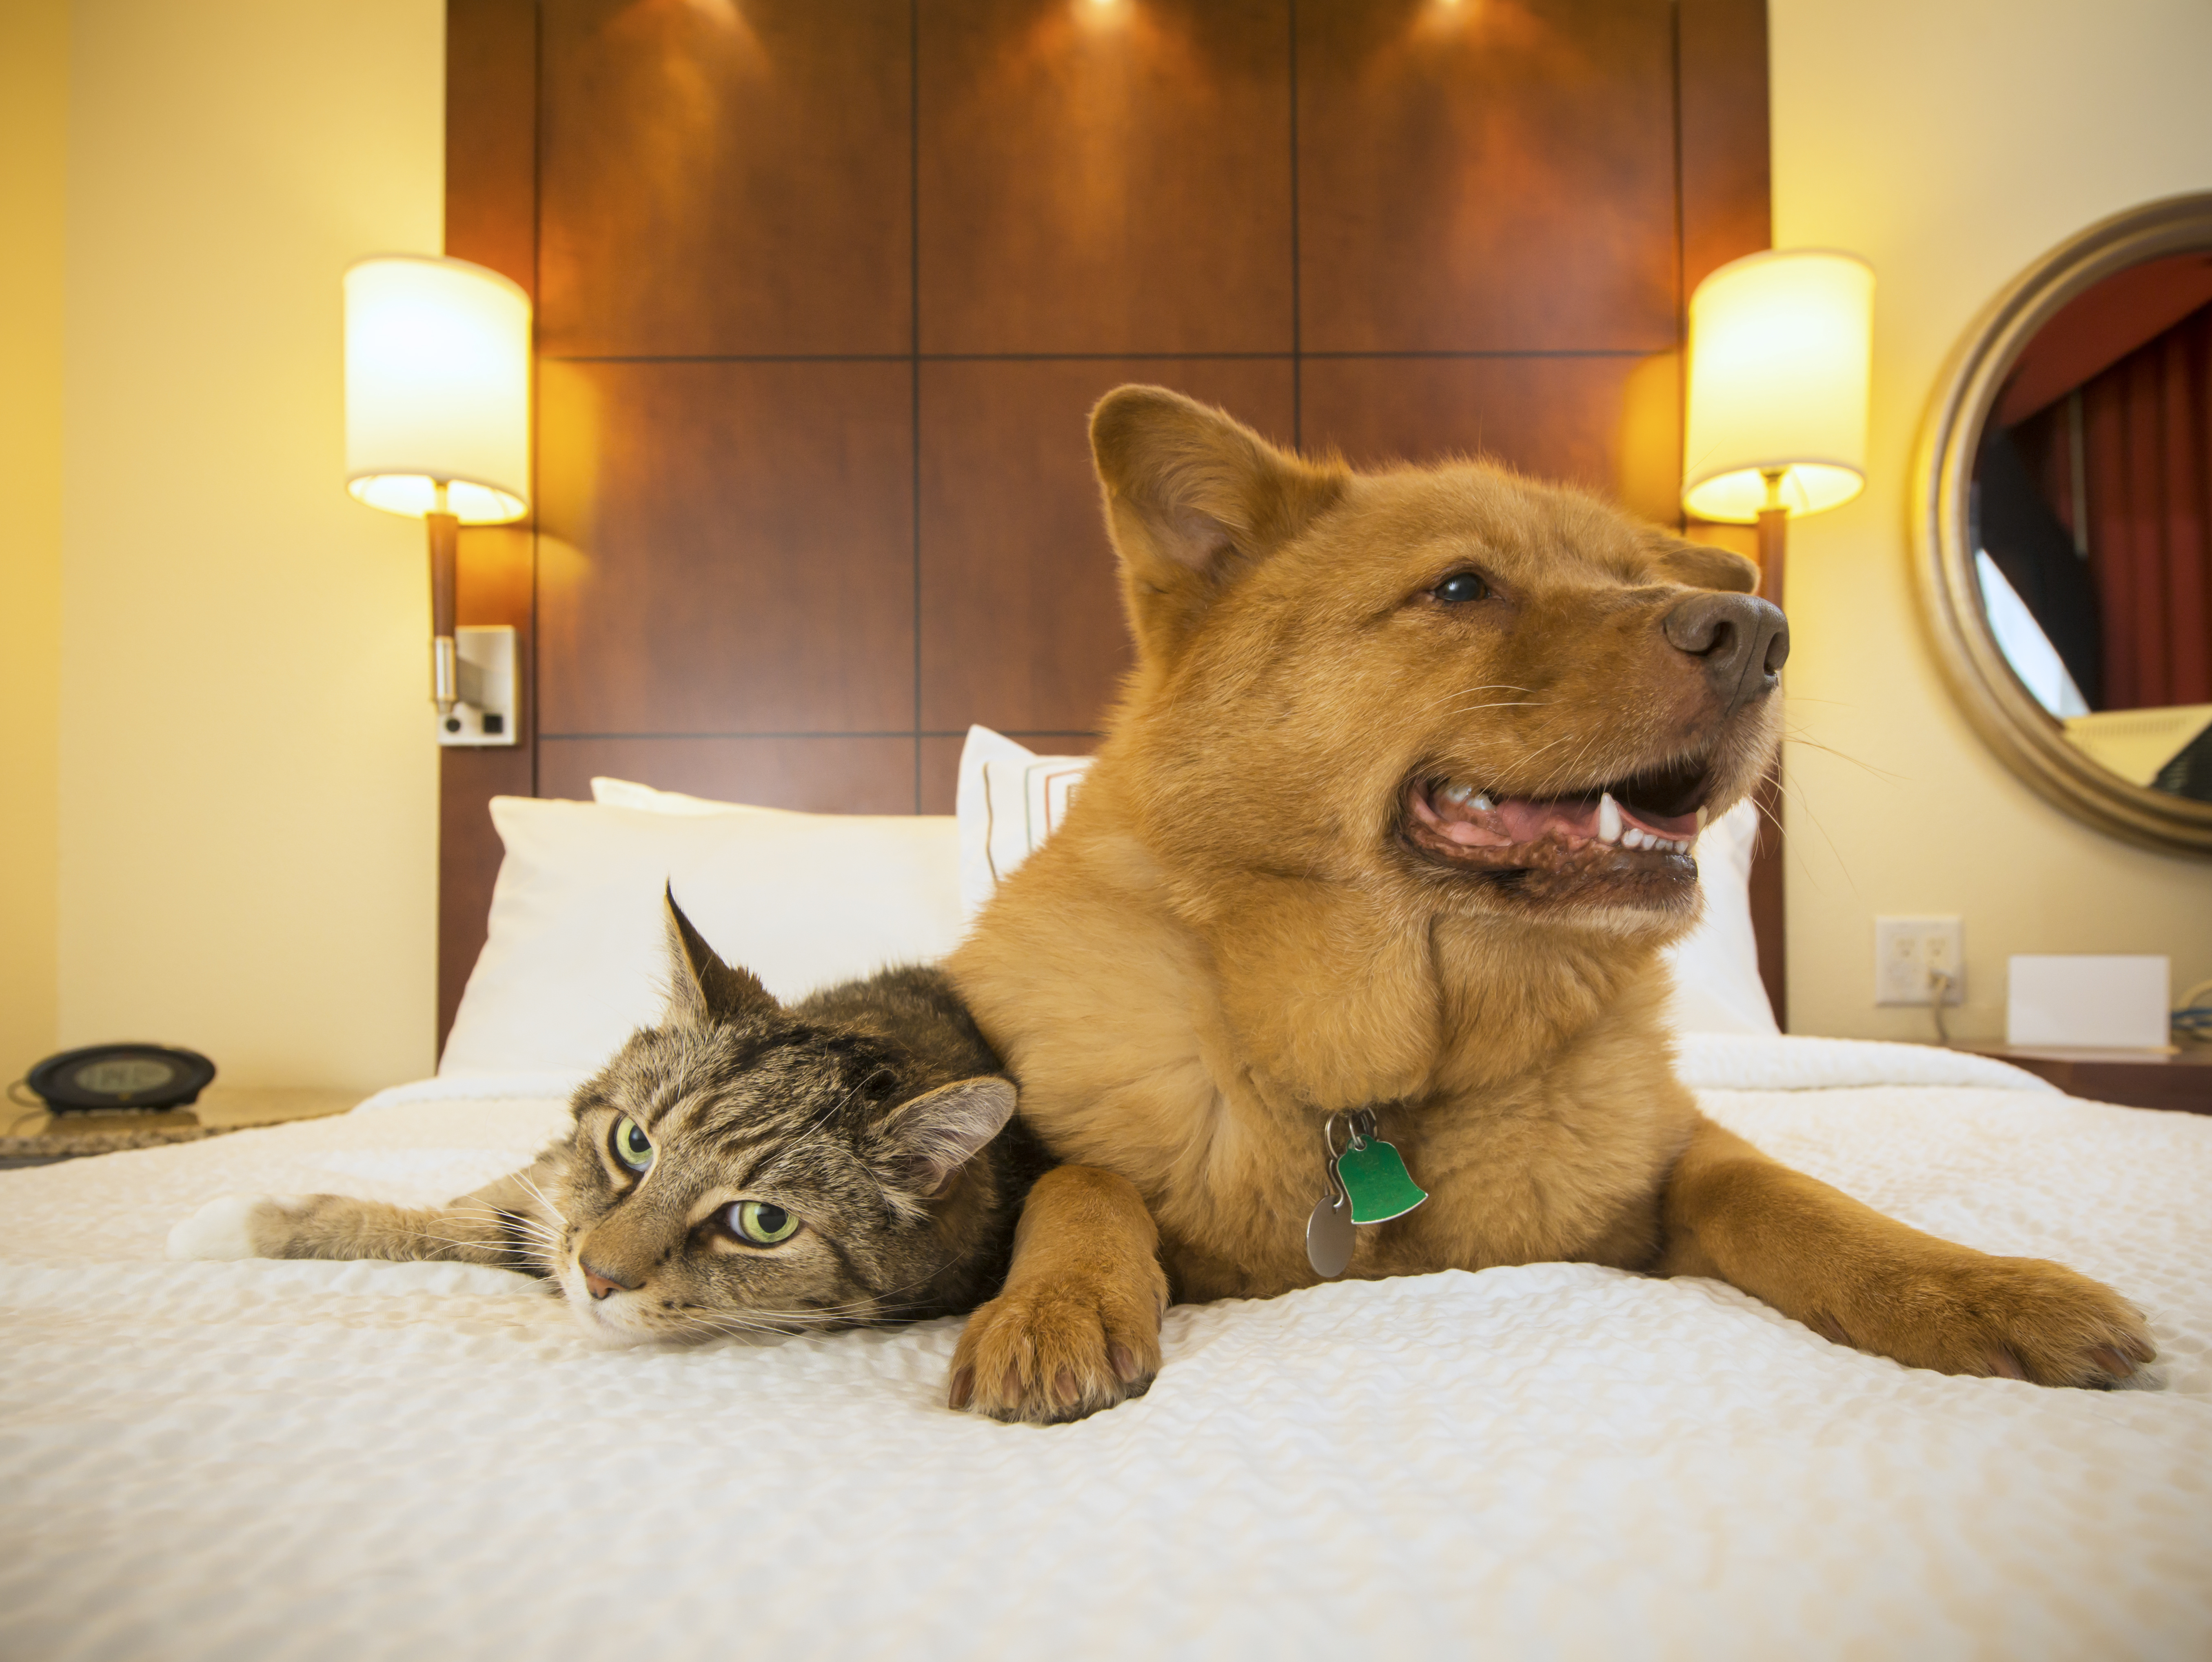 Gato y perro juntos descansando en la cama de la habitación del hotel.